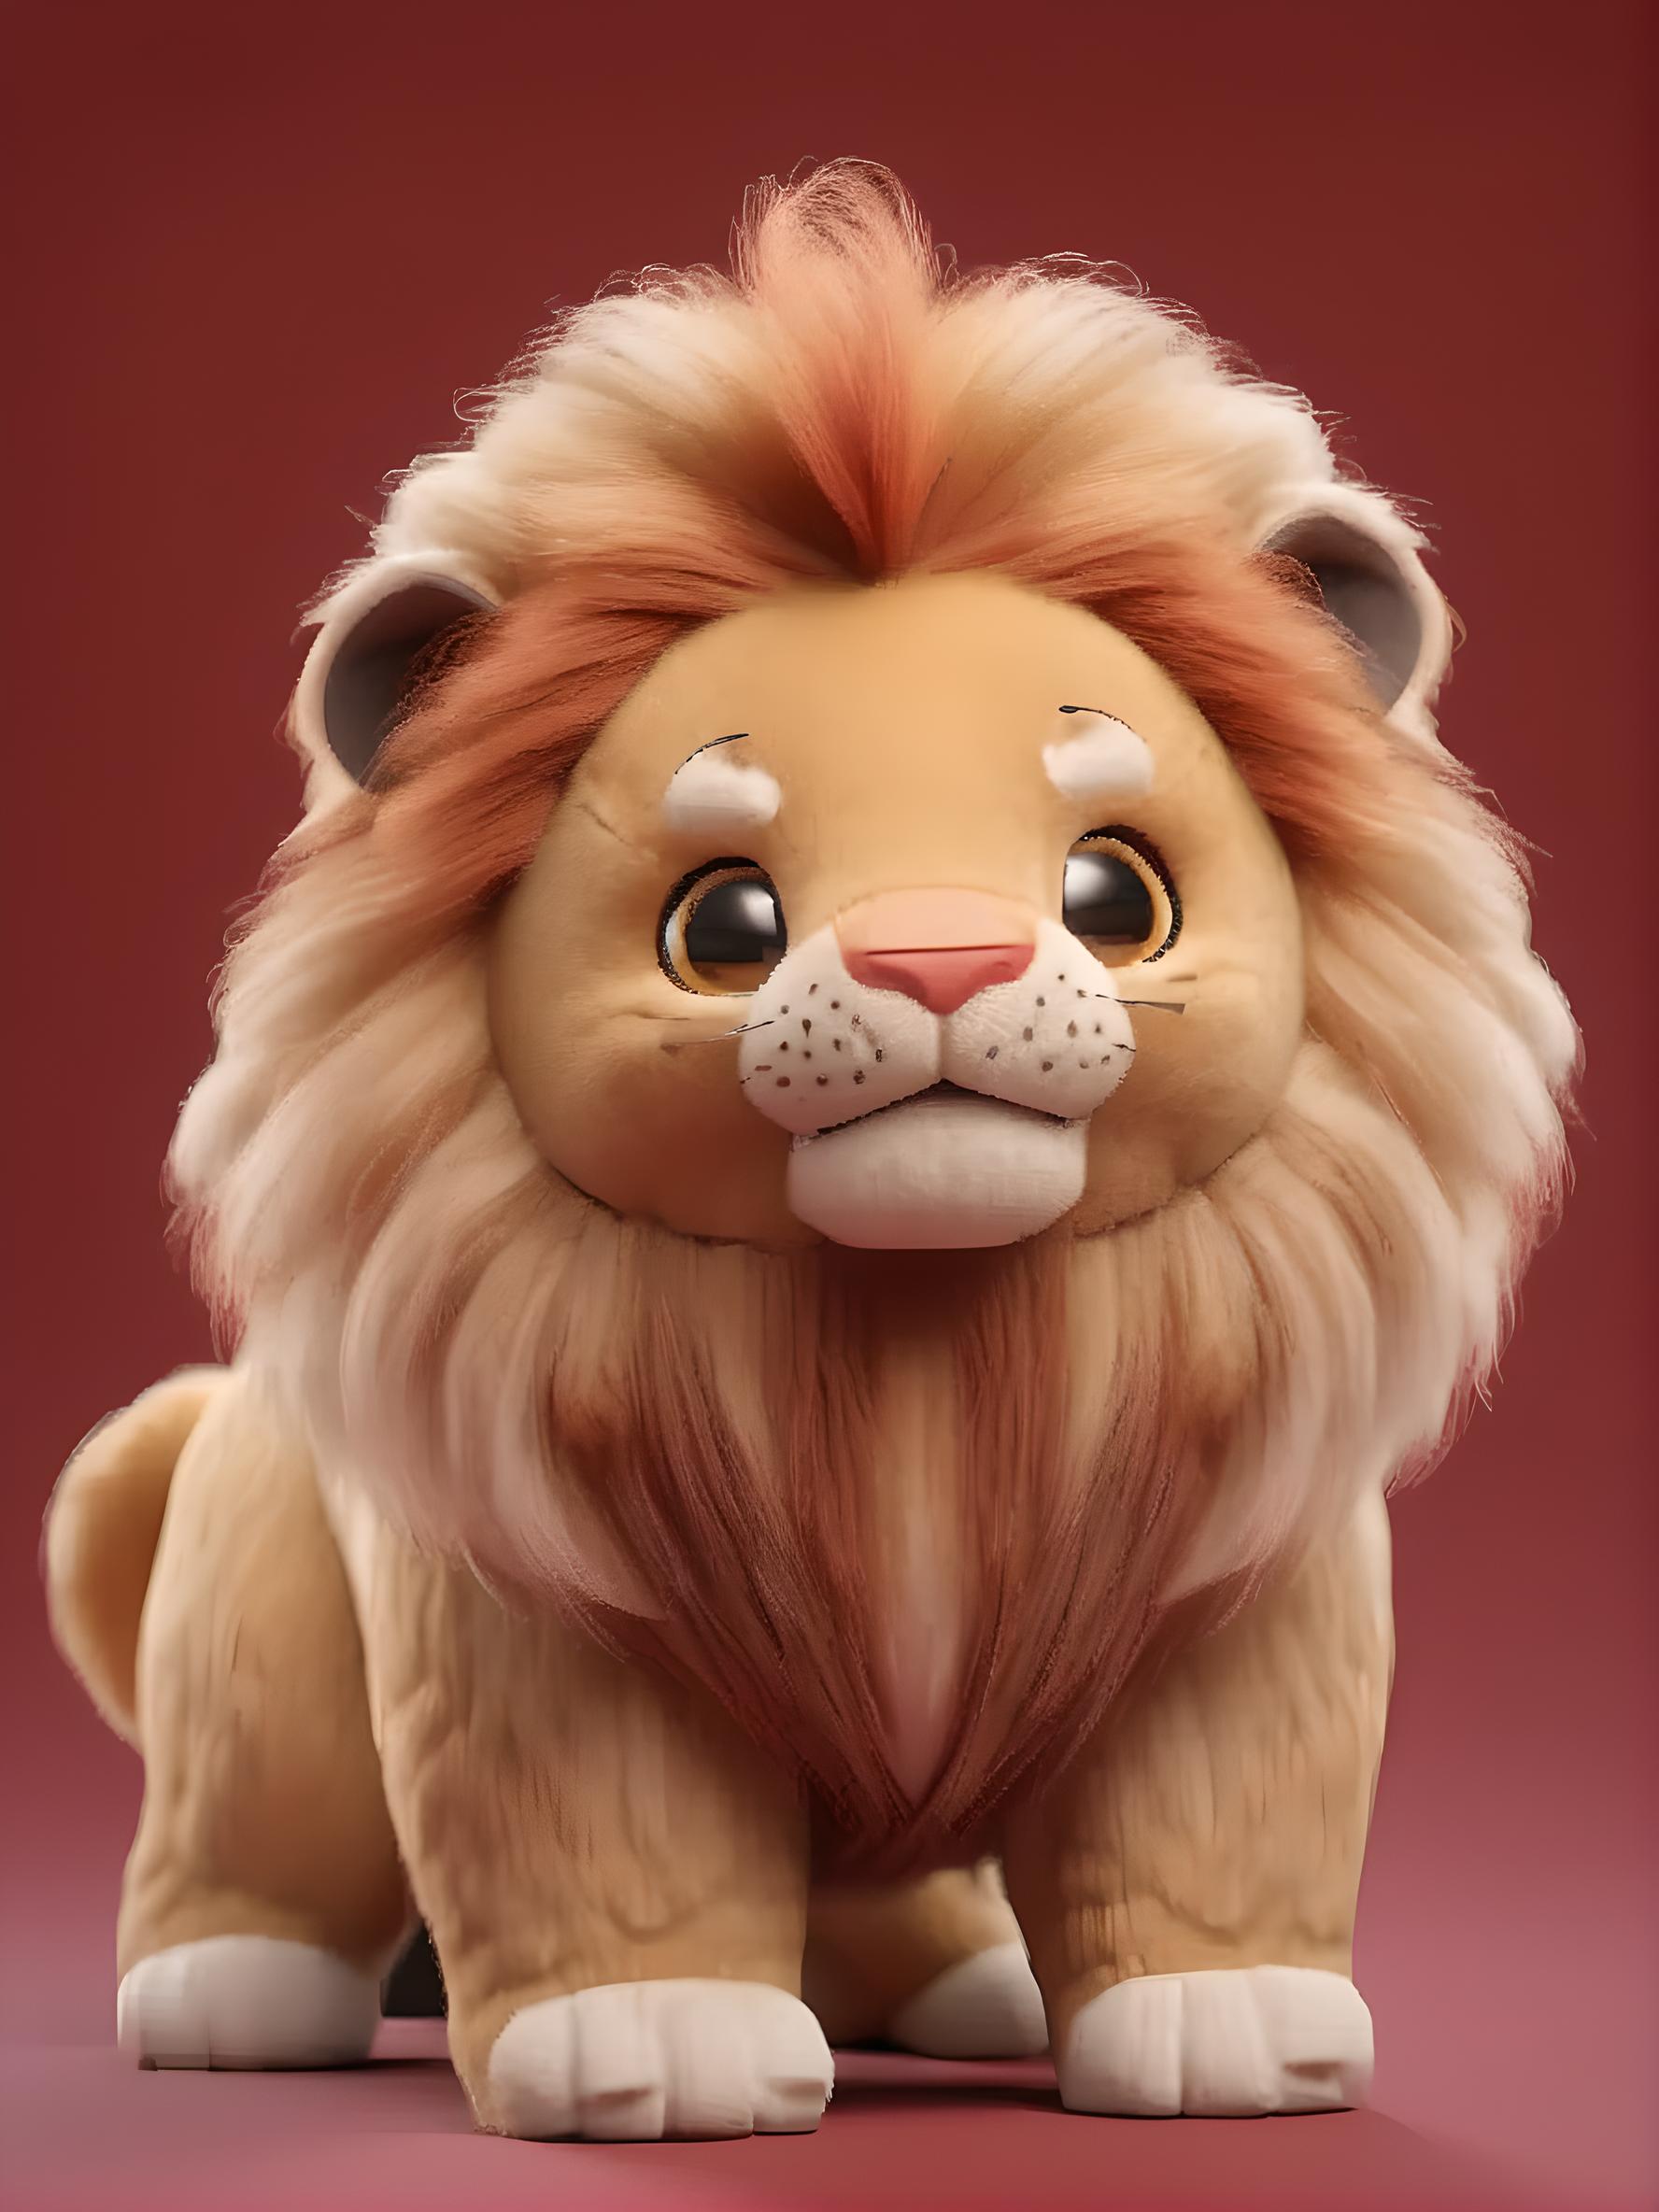 狮子